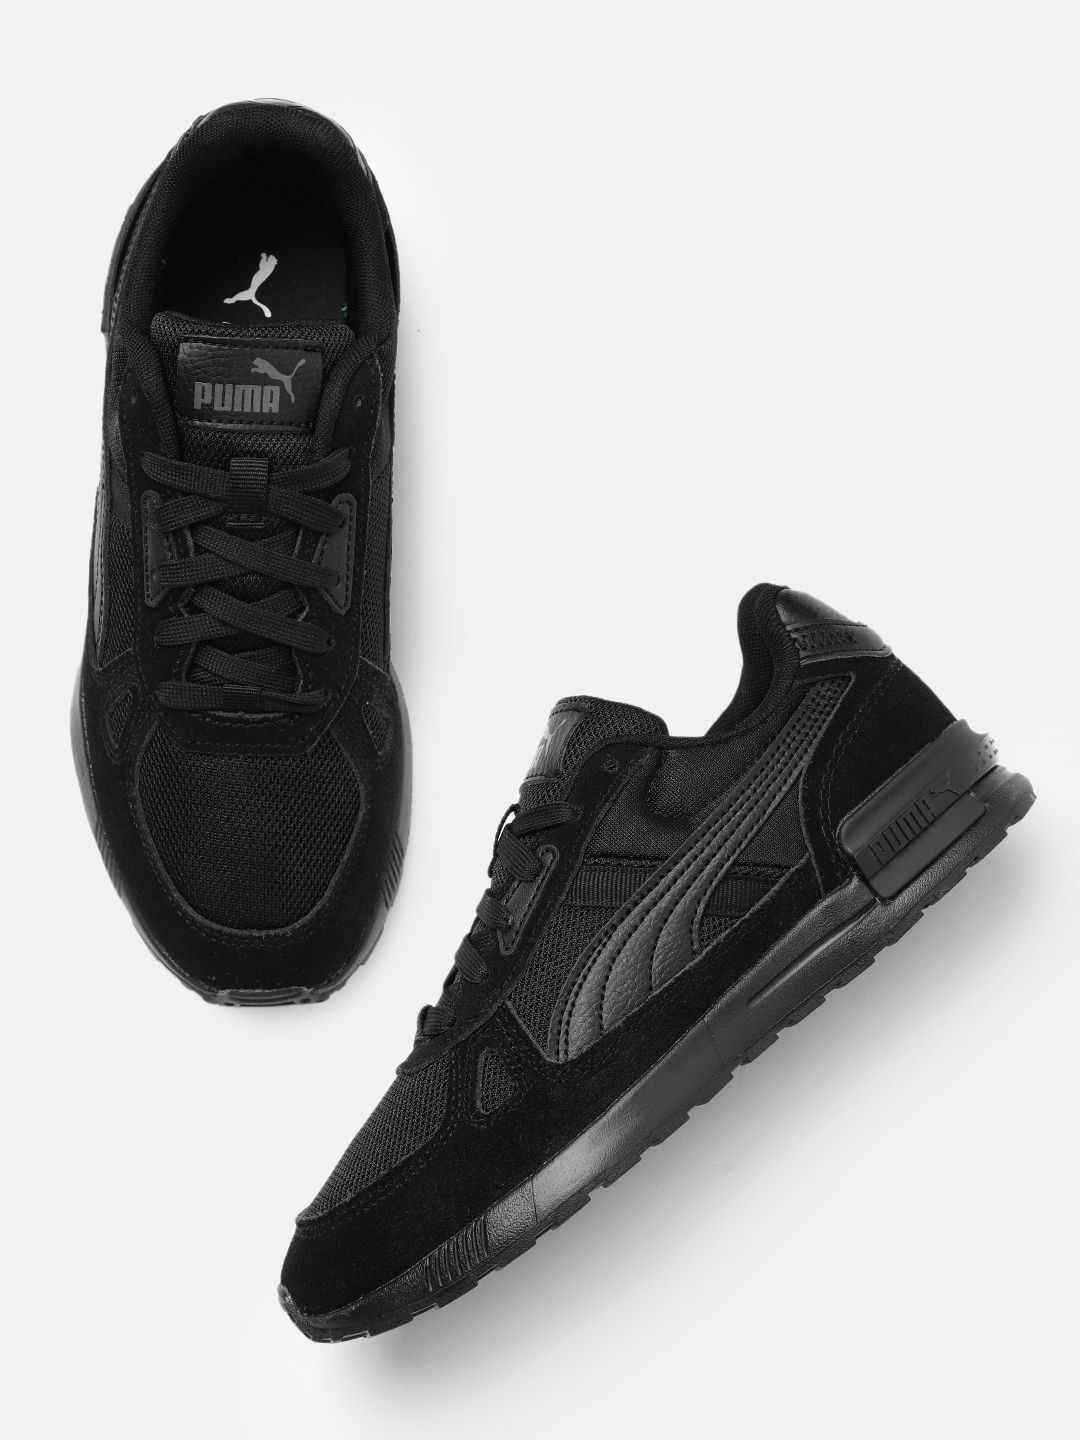 Puma Unisex Black Graviton Pro Textured Sneakers Price in India